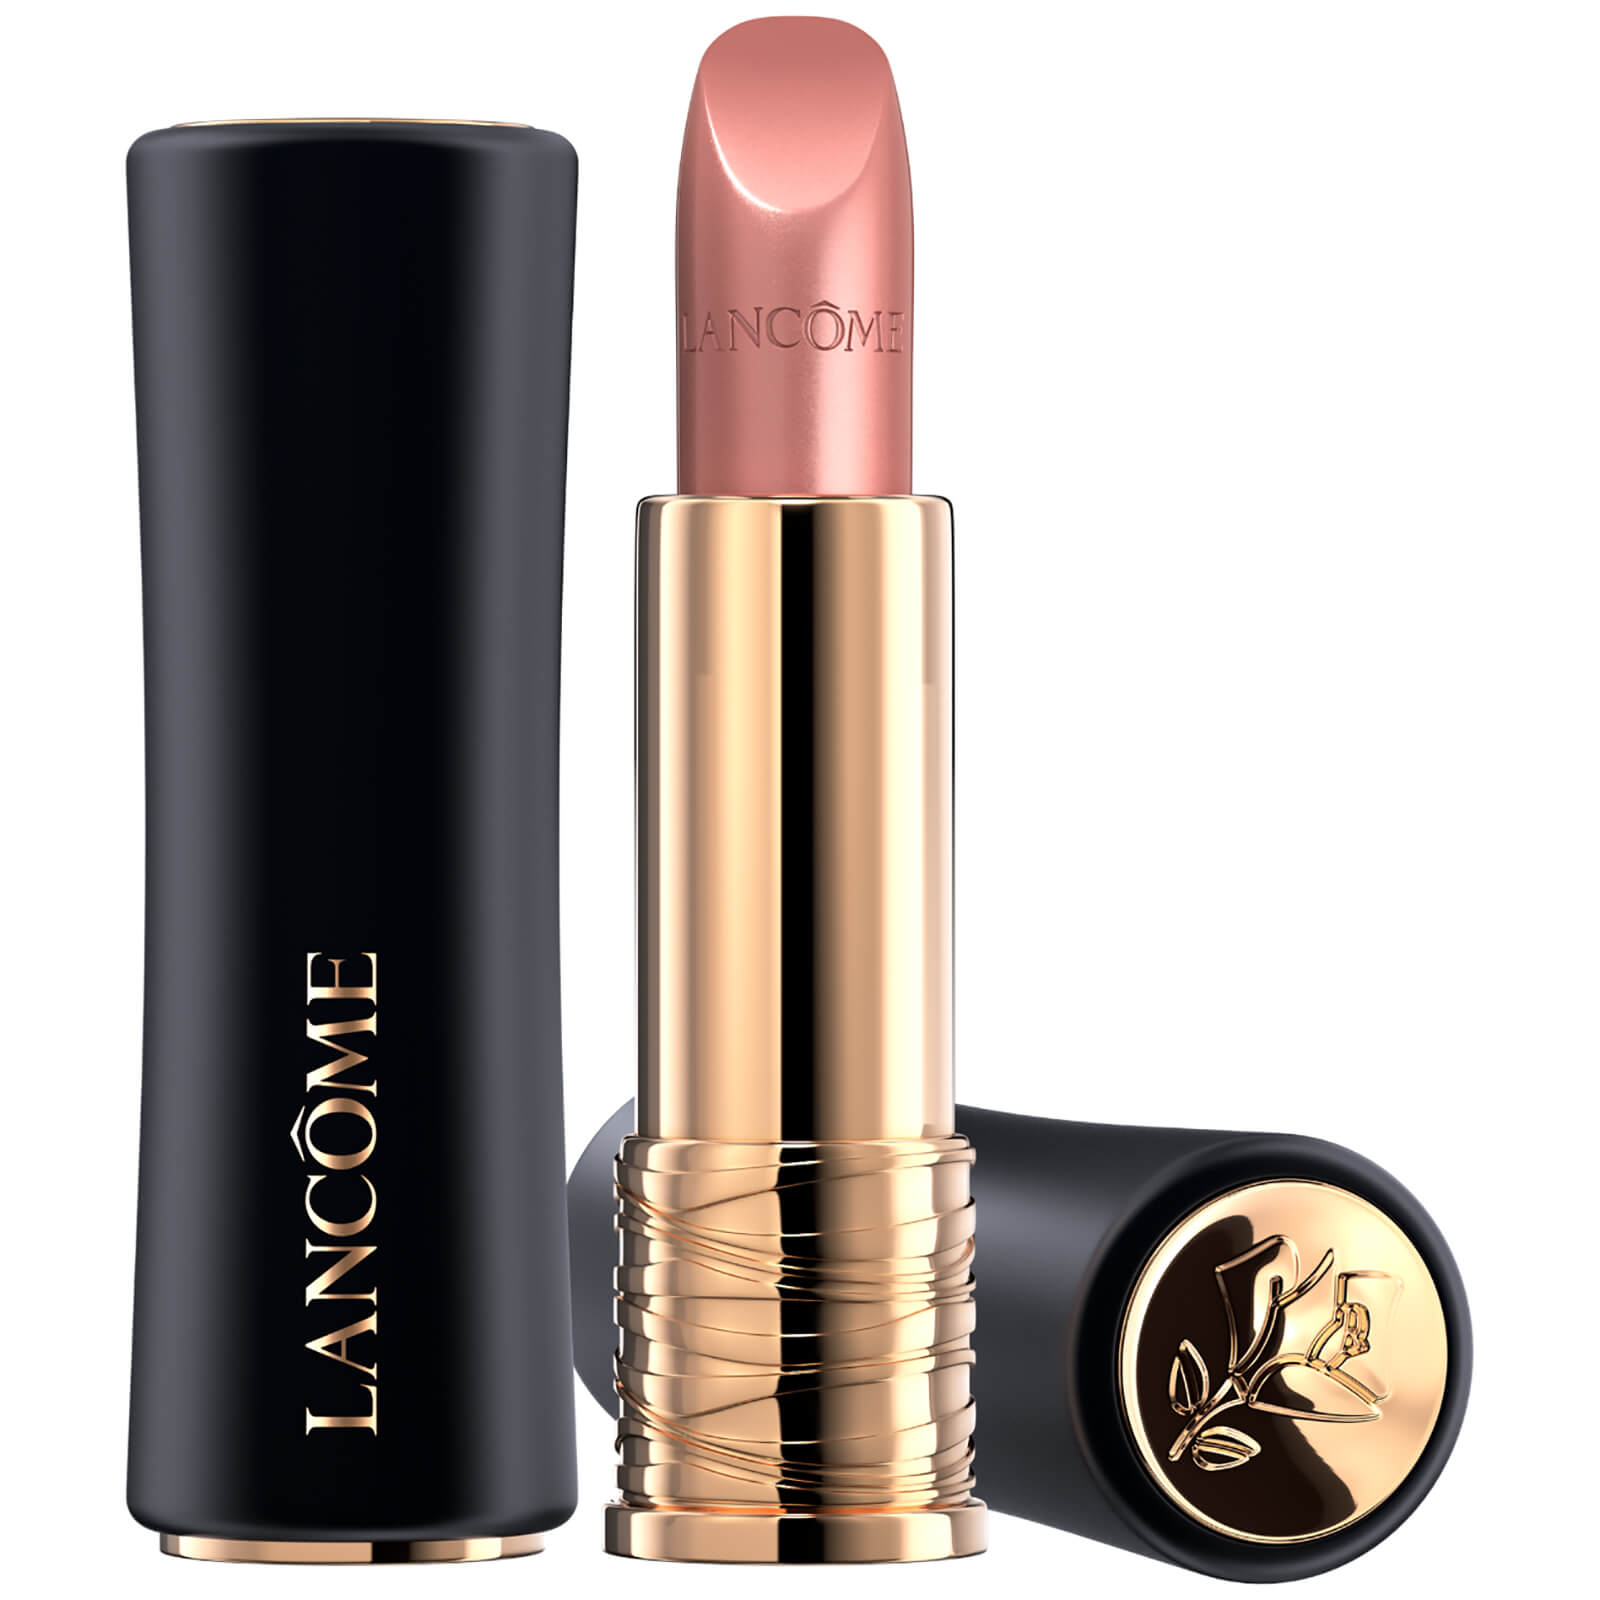 Lancôme L'Absolu Rouge Cream Lipstick 35ml (Verschiedene Farbtöne) - 250 Tendre Mirage